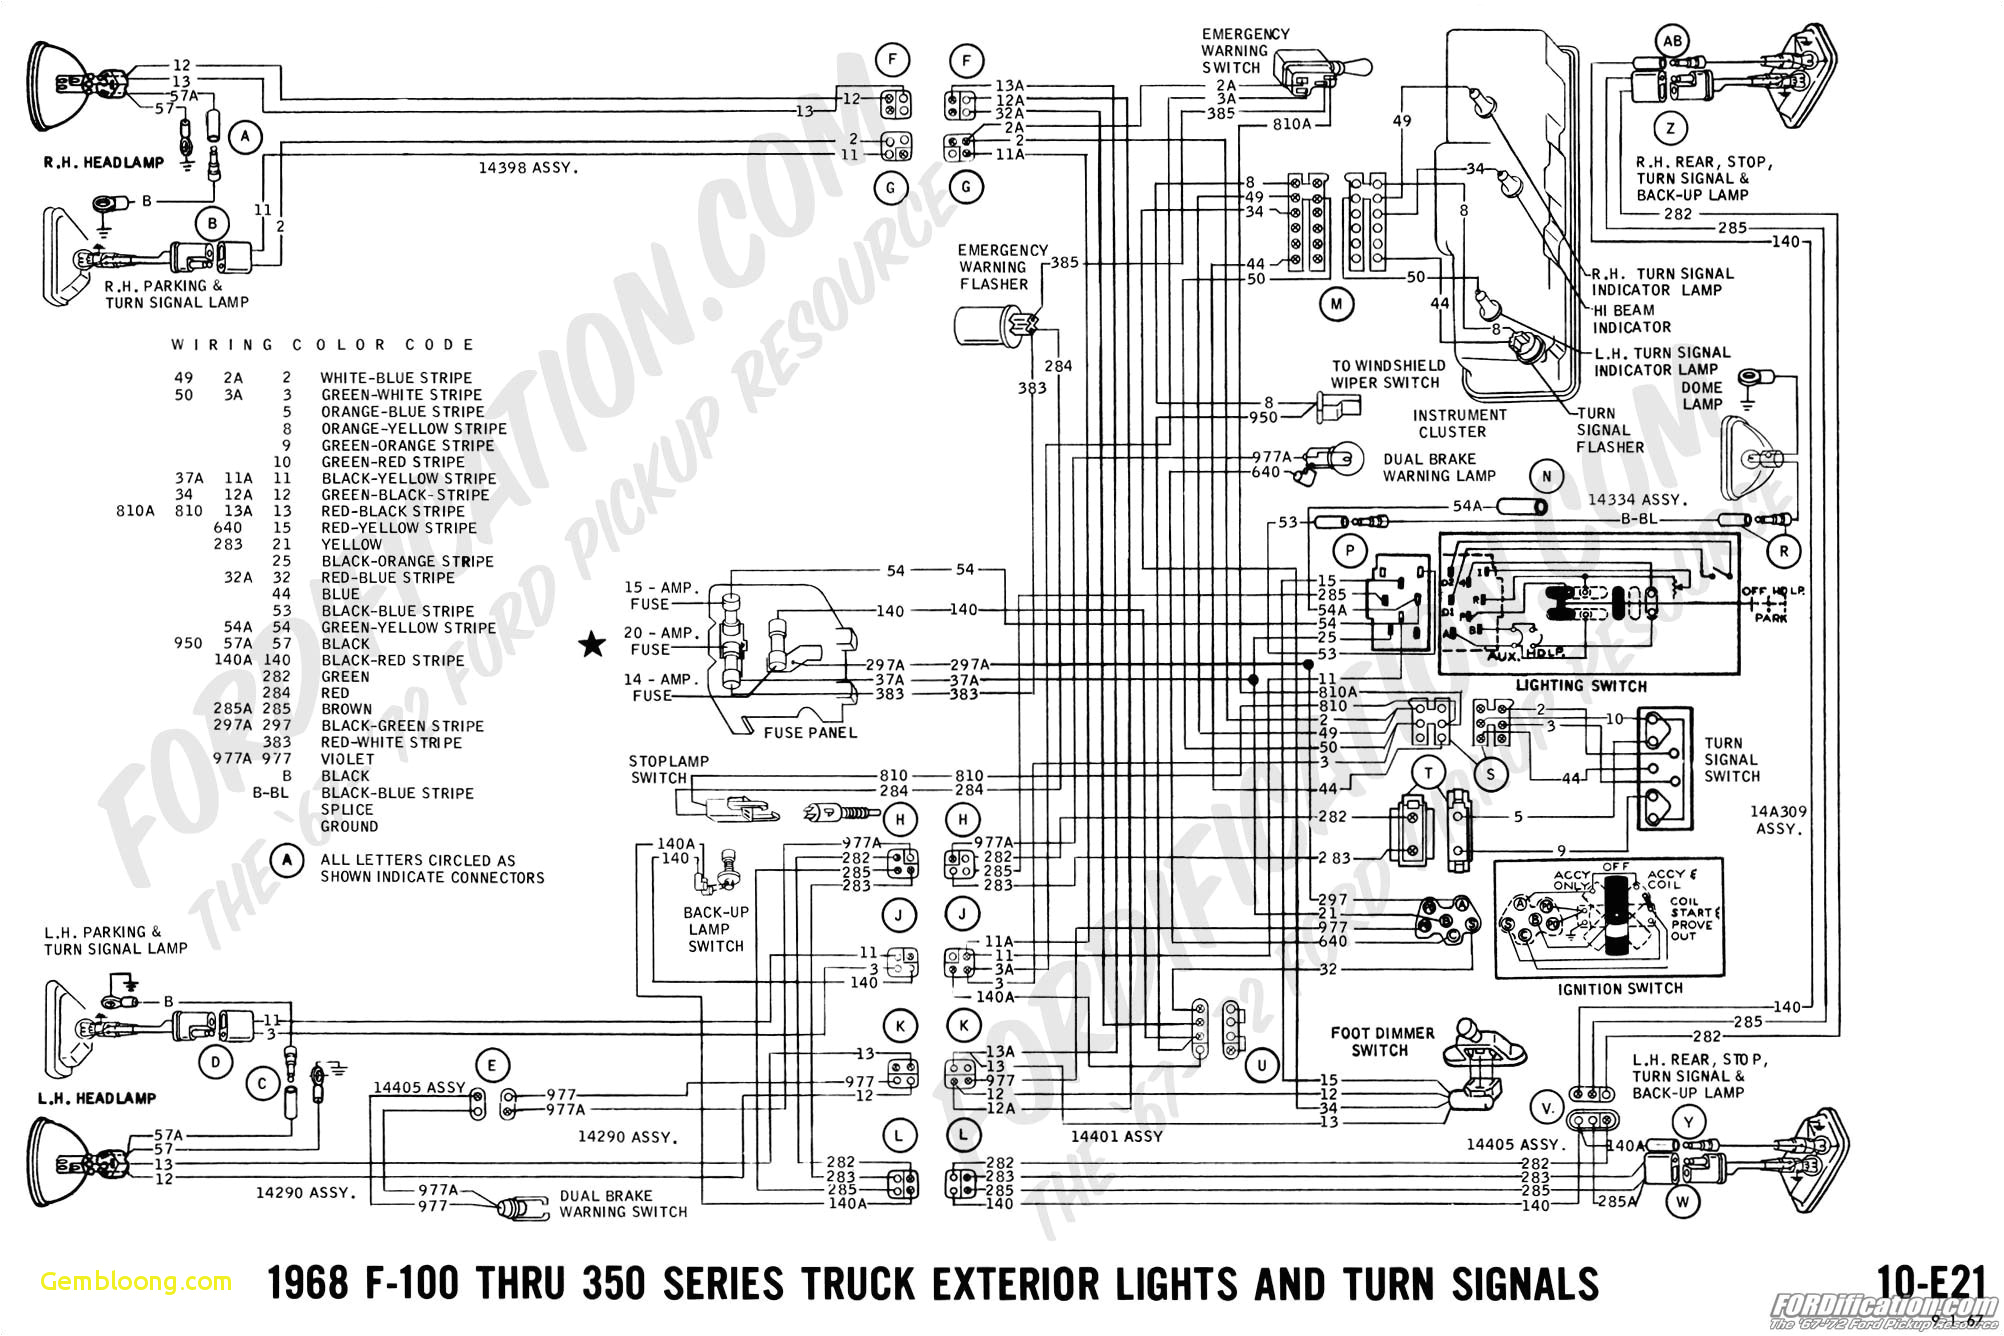 1985 mustang turn signal wiring diagram wiring diagrams value 1985 mustang turn signal wiring diagram